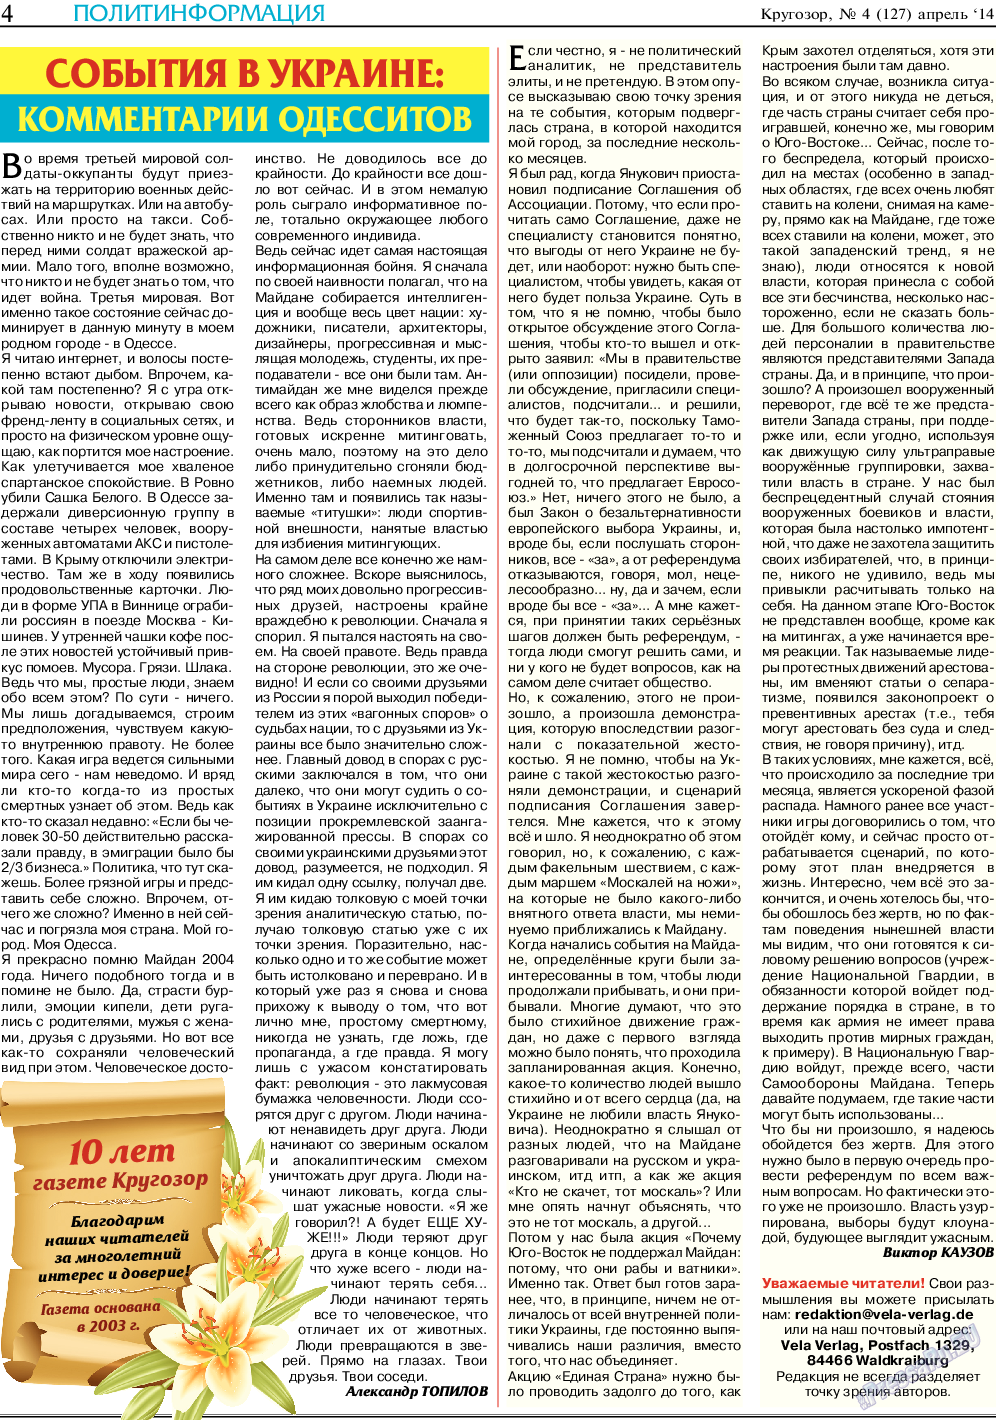 Кругозор, газета. 2014 №4 стр.4